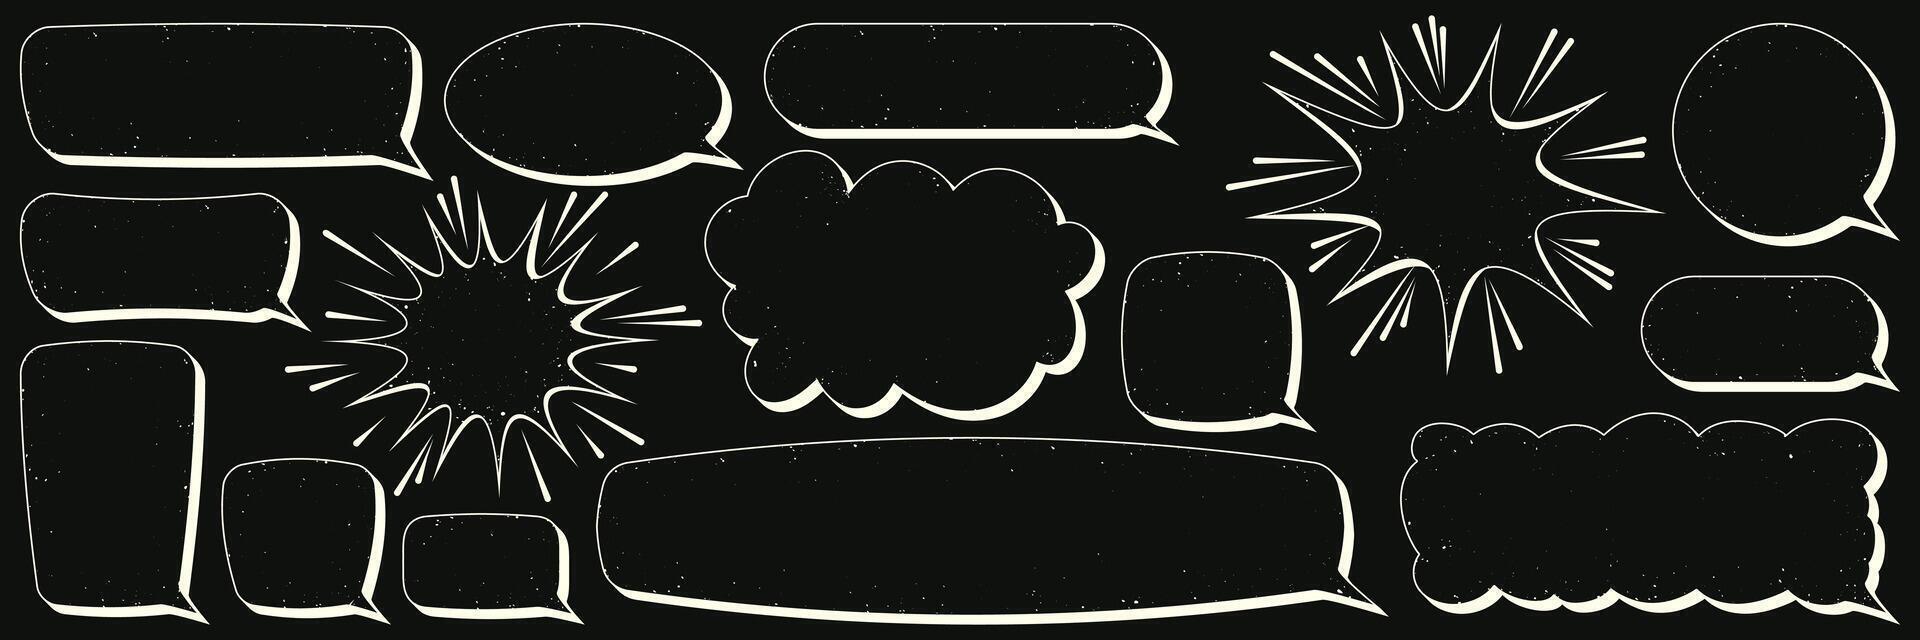 uppsättning av komisk Tal bubblor i de form av en moln, rektangel, utplåna med tömma Plats för text. vektor illustration i retro linjär stil utan skuggning med textur av smuts, skav.